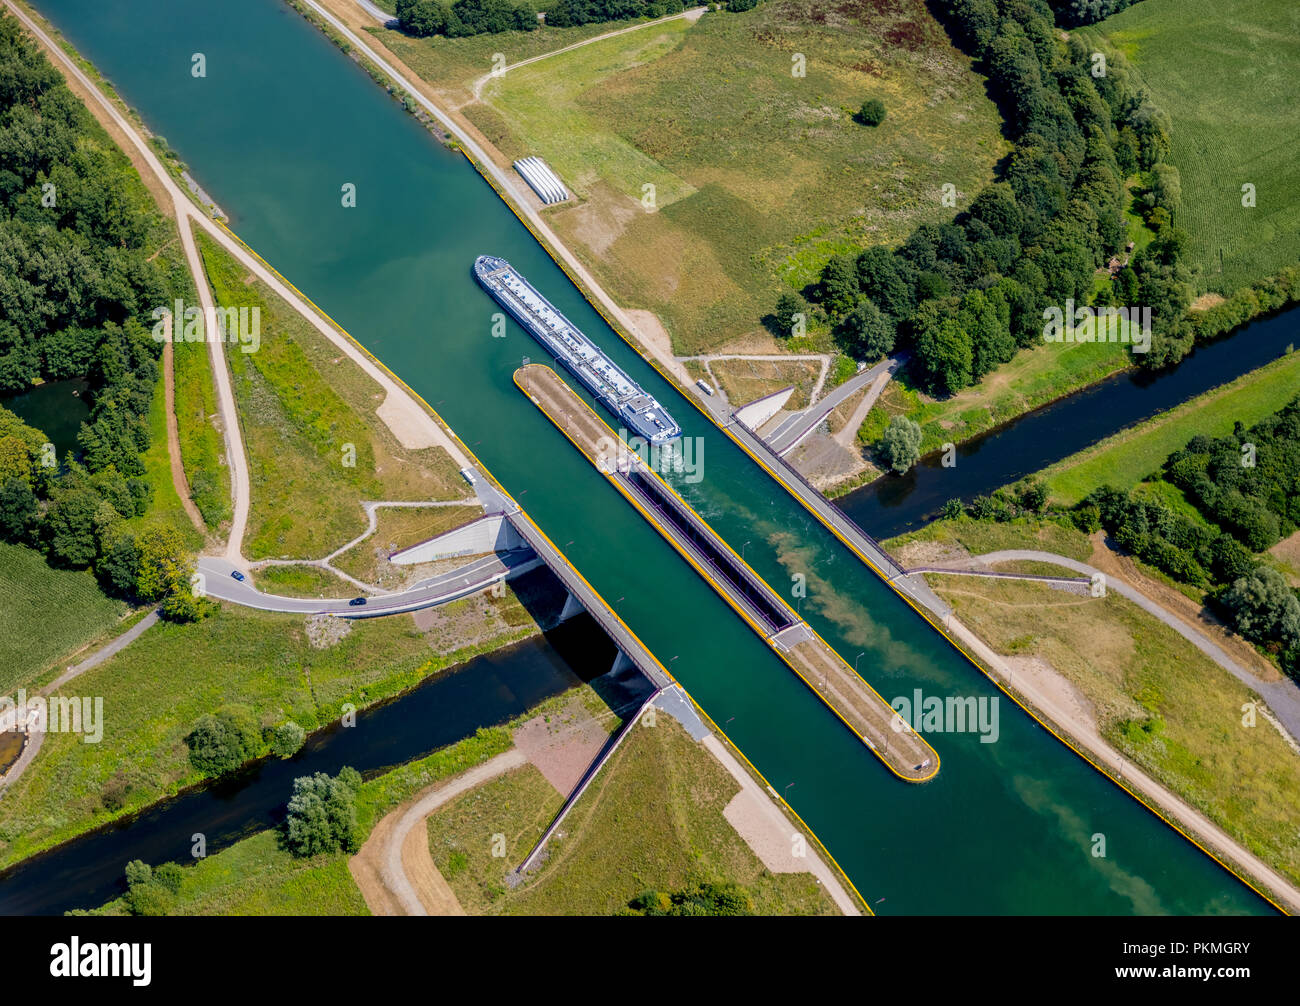 Vue aérienne, pont-canal, pont de l'eau, canal intersection avec la rivière Lippe, bateaux de navigation intérieure, d'un cargo, la navigation intérieure Banque D'Images